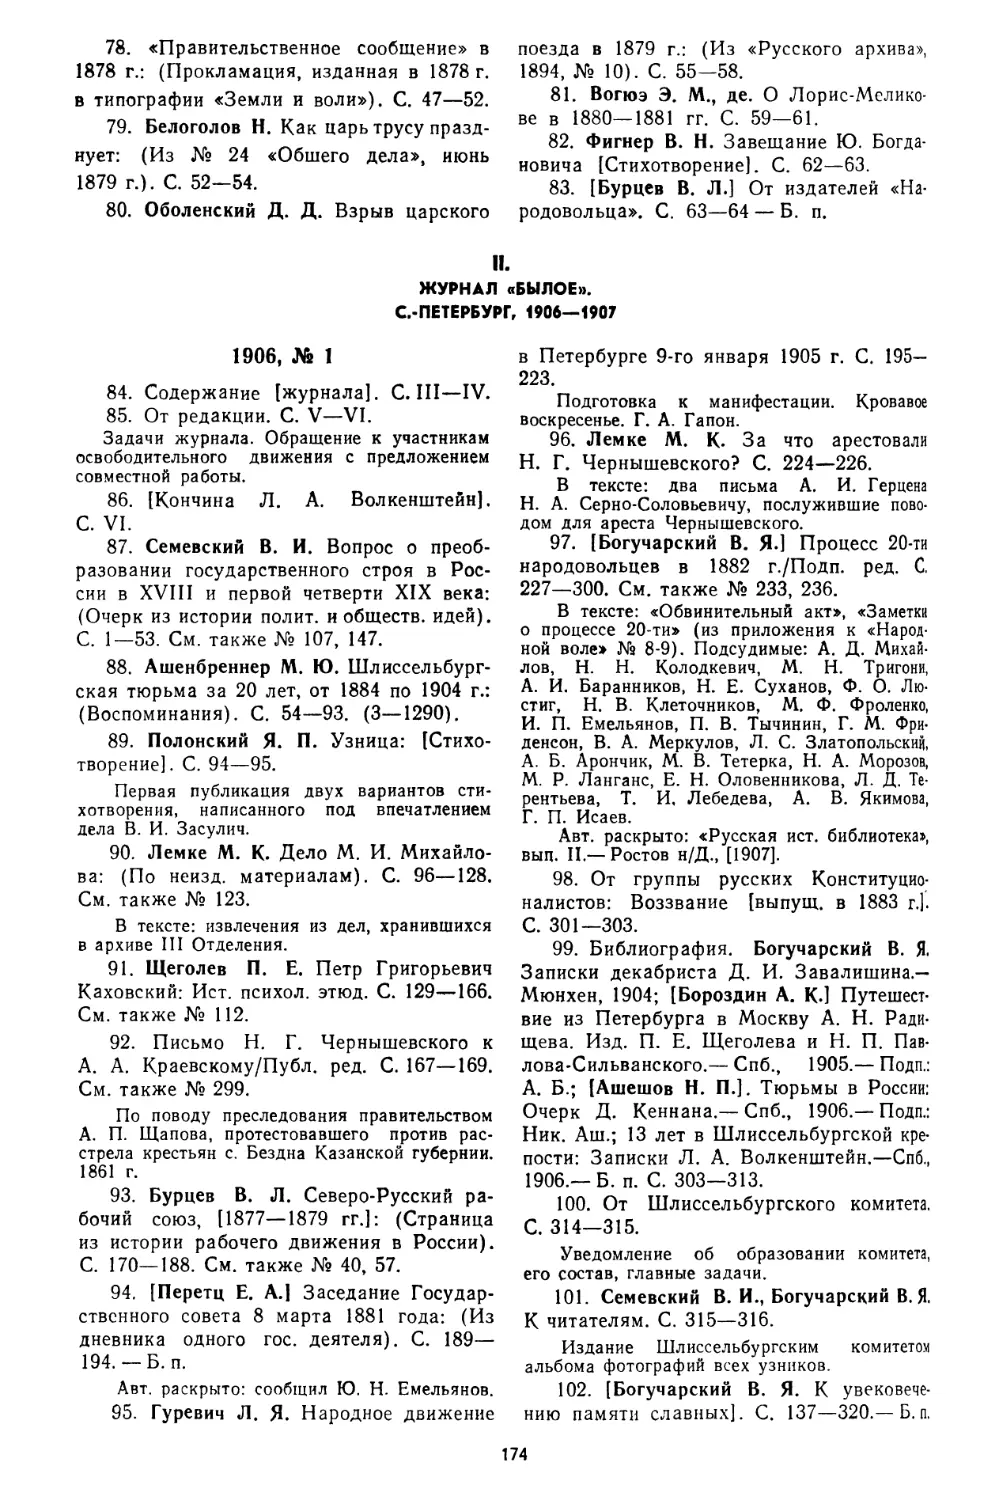 II. Журнал «Былое». С.-Петербург, 1906—1907, № 84—621